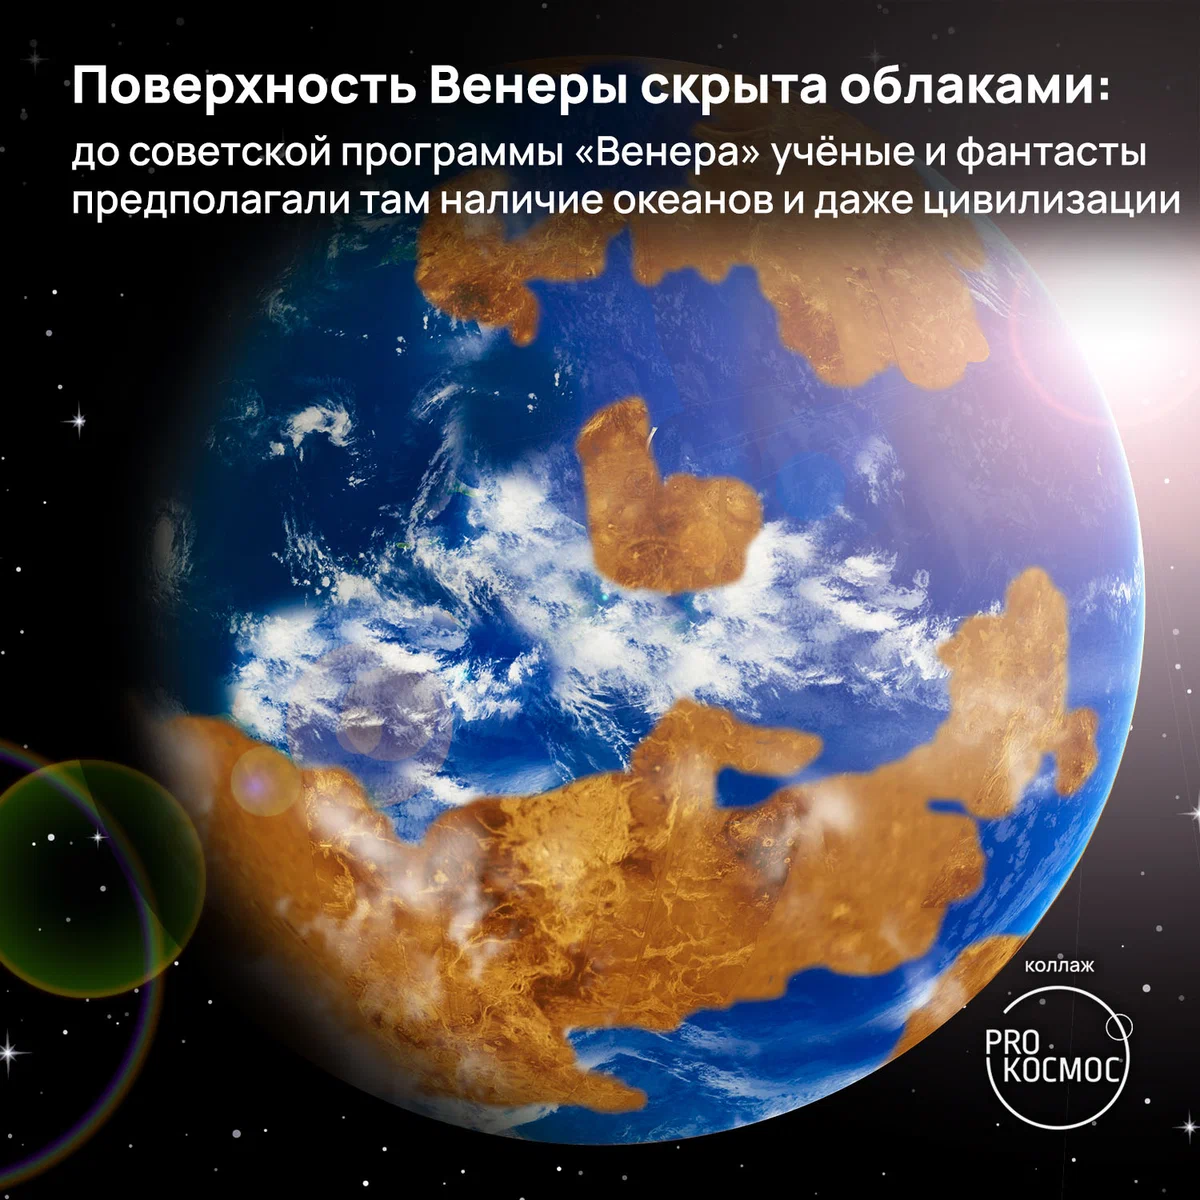 Экстремальная Венера: ворох занимательных фактов о второй планете в годовщину запуска станции «Венера-12» height=1200px width=1200px